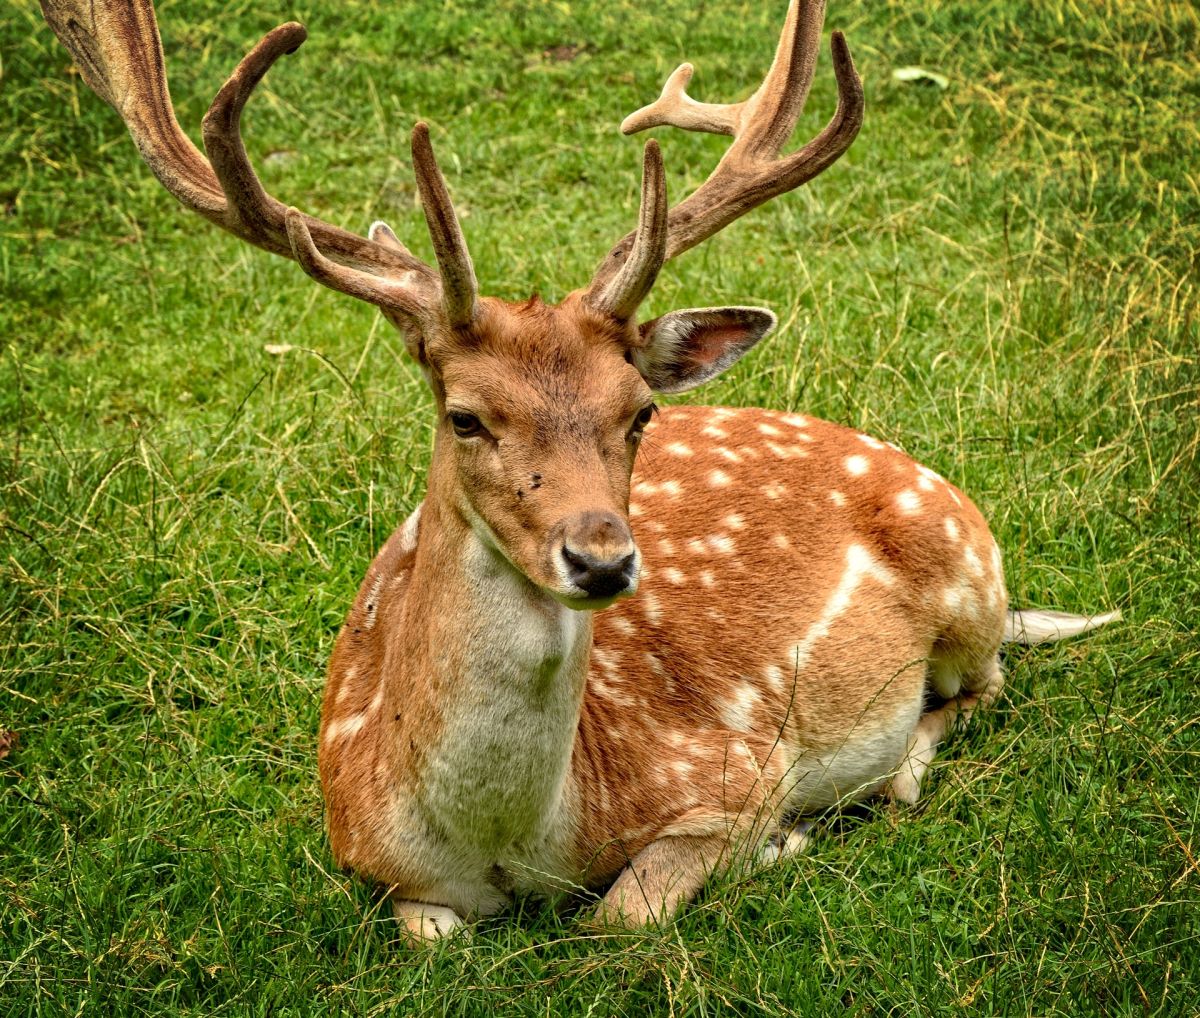 Wisconsin seeks help to reduce the spread of “zombie deer disease” among deer